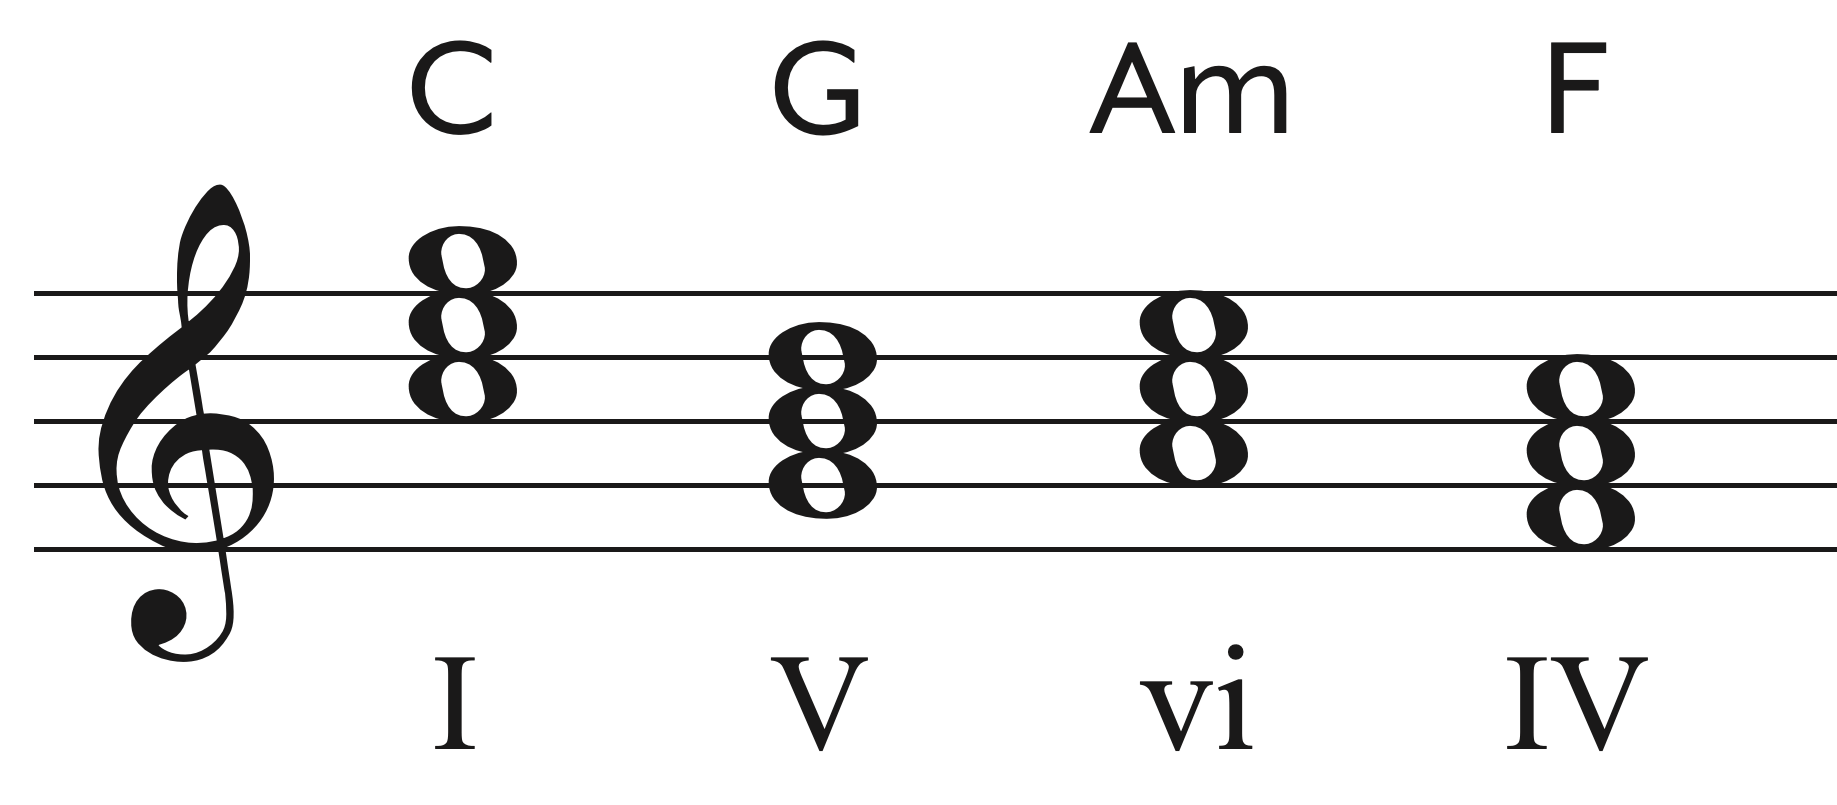 C-G-Am-F chord progression